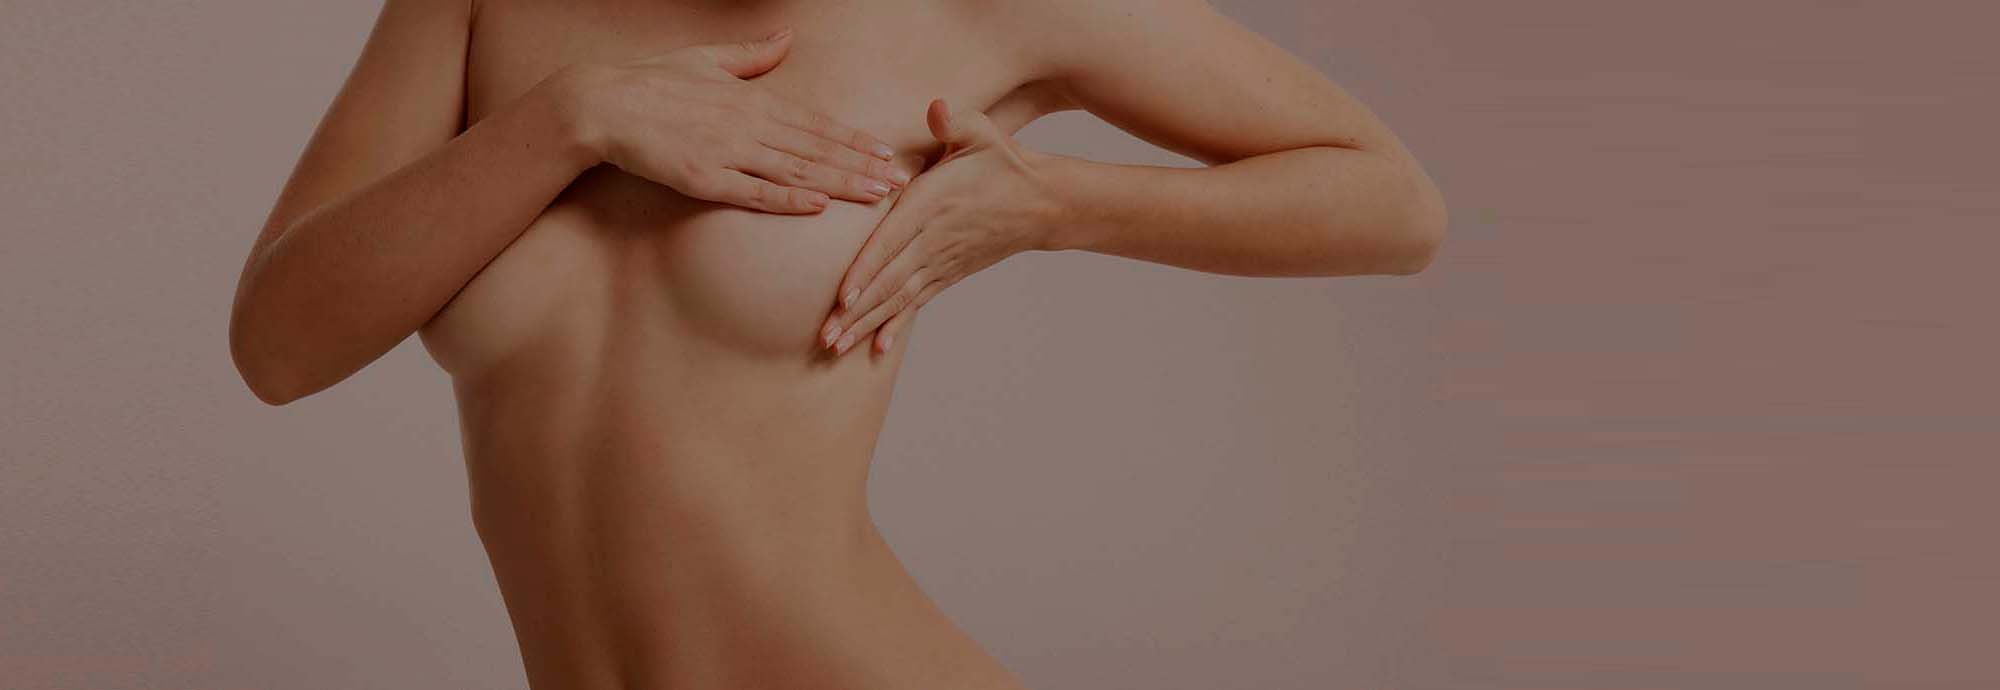 La symétrisation deuxième sein en reconstruction mammaire à Valence